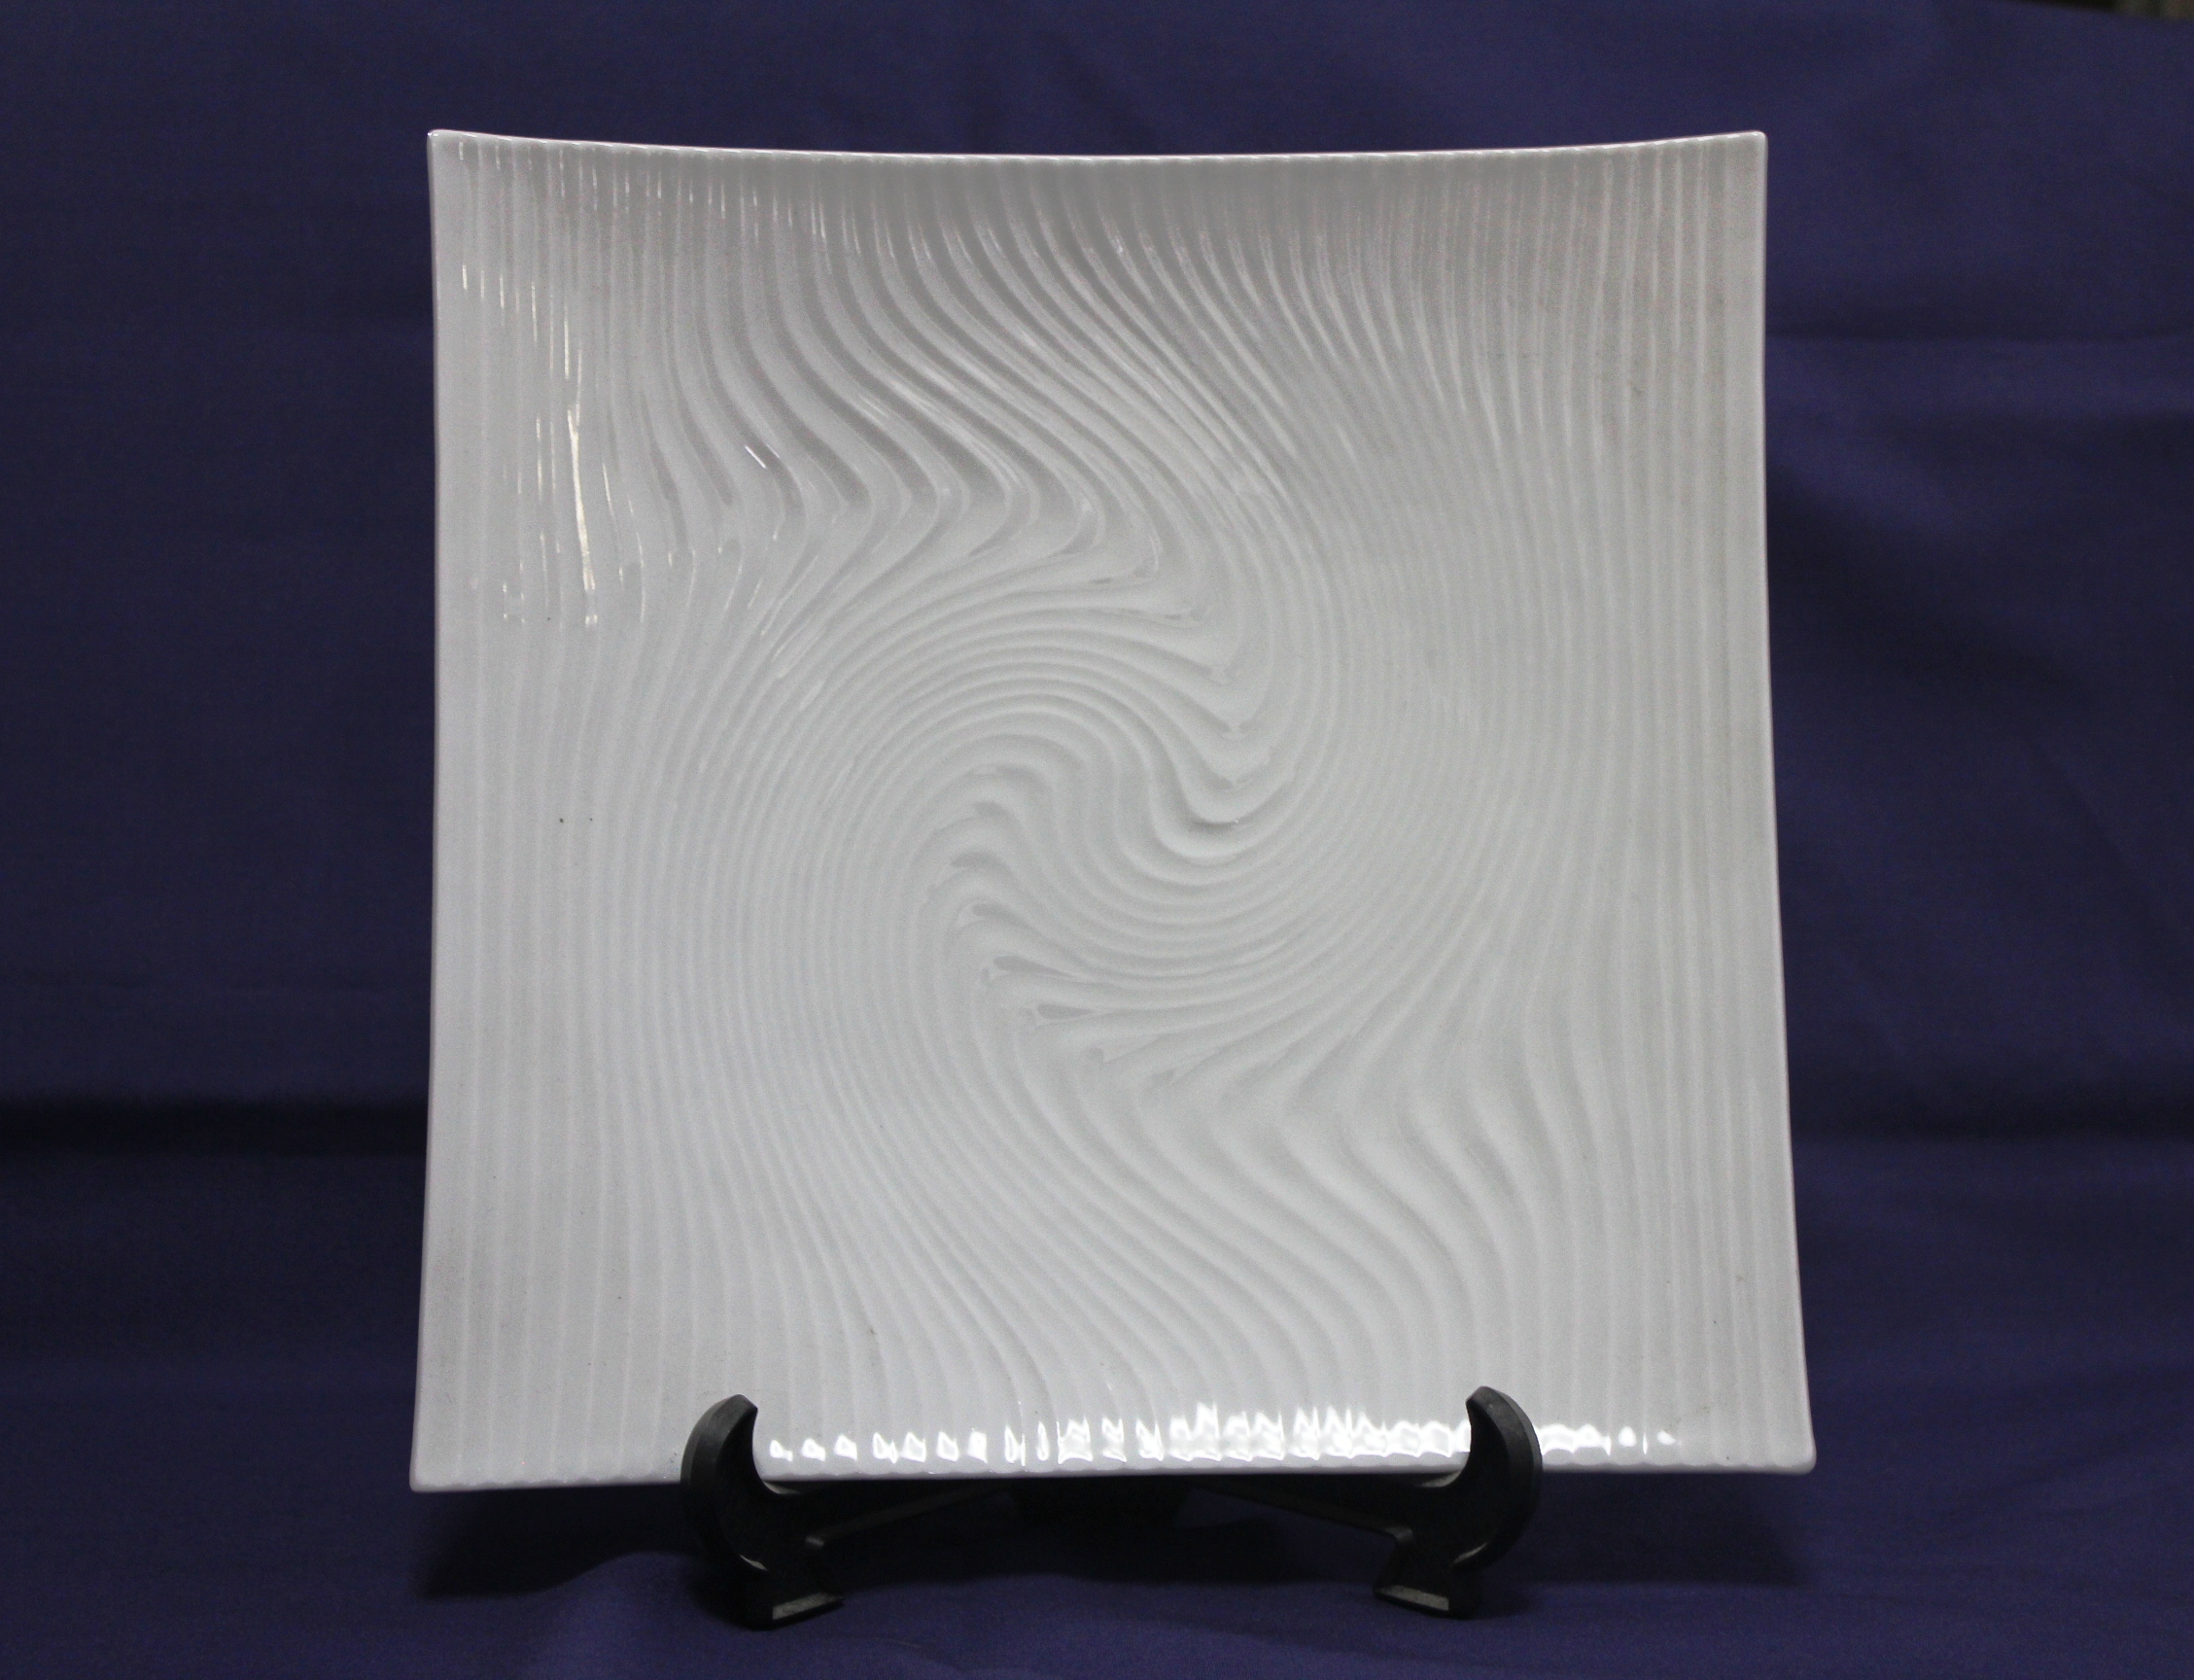 八寸正角皿 白磁波彫<br />サラダや刺身盛りなど様々な料理に使える角皿です。<br />皿の表面に彫で波を表し、シンプルな中に個性が表現されています。